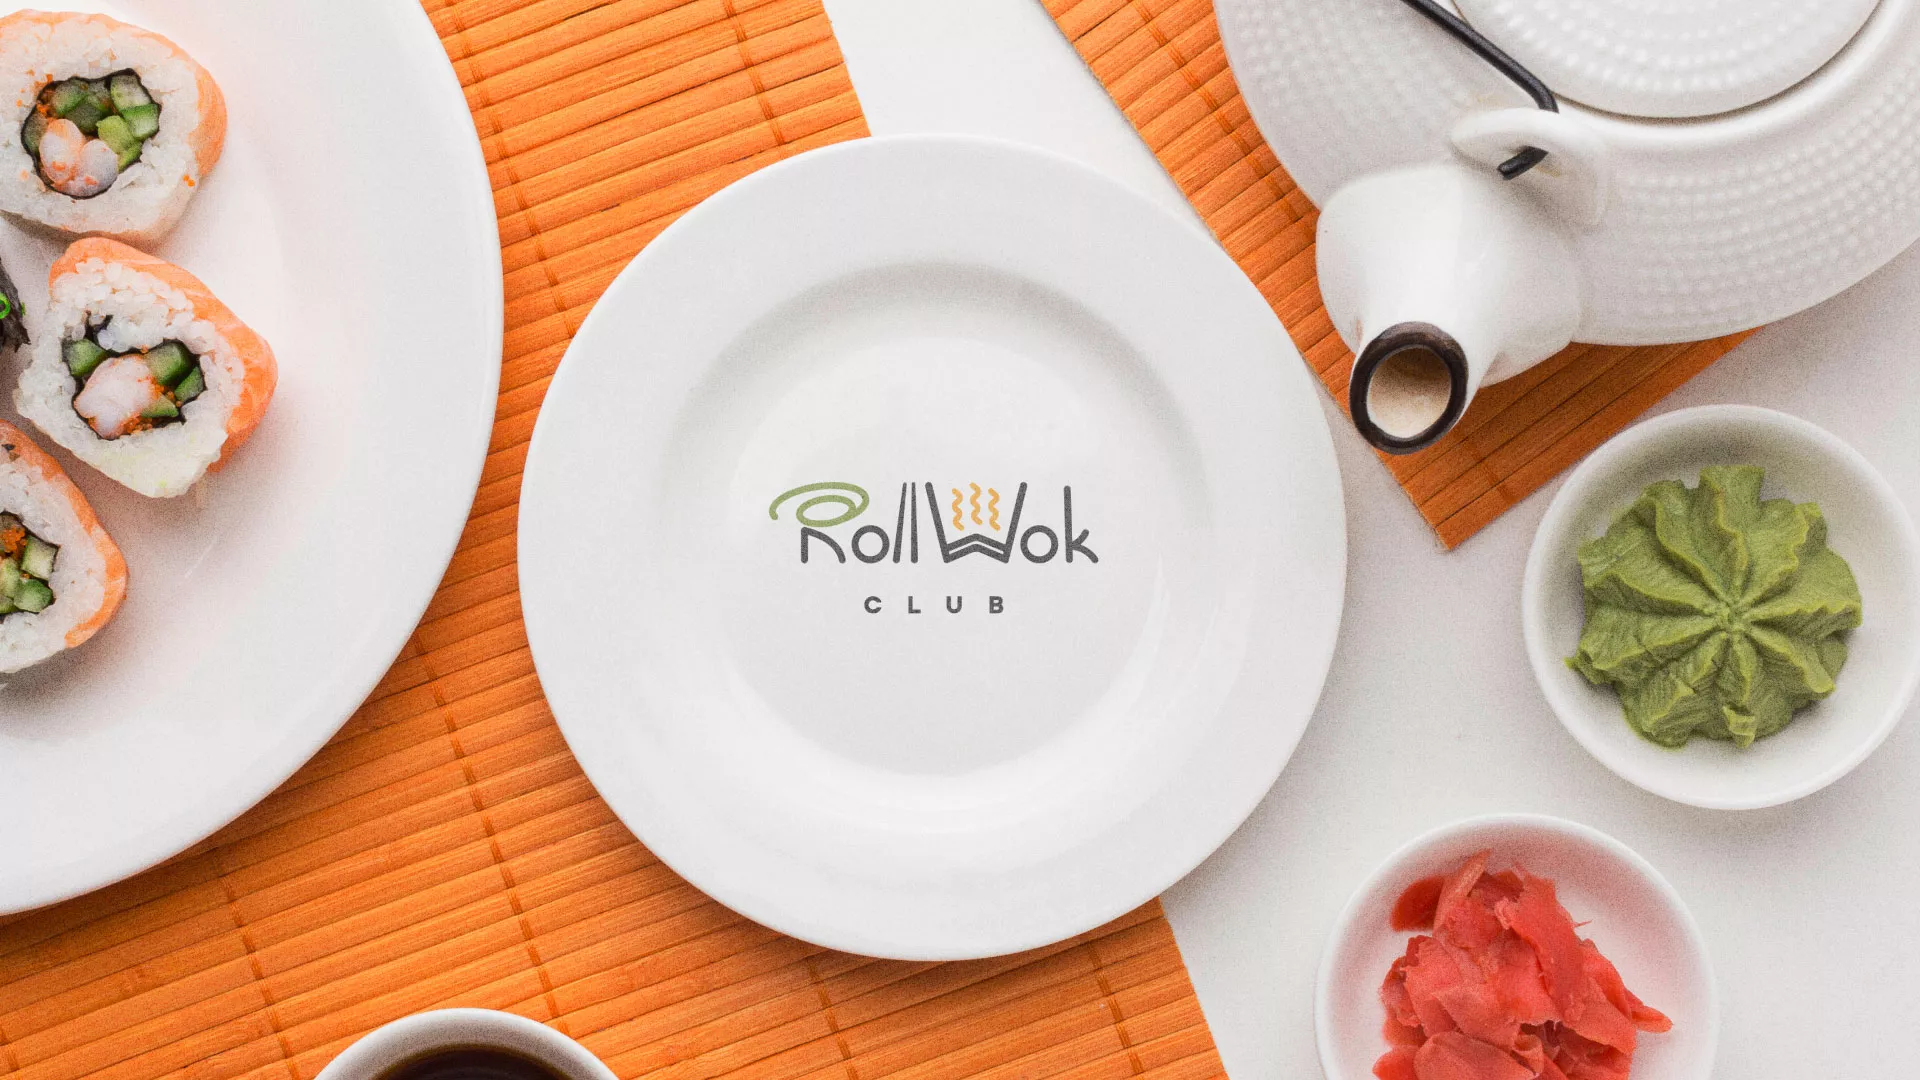 Разработка логотипа и фирменного стиля суши-бара «Roll Wok Club» в Старице